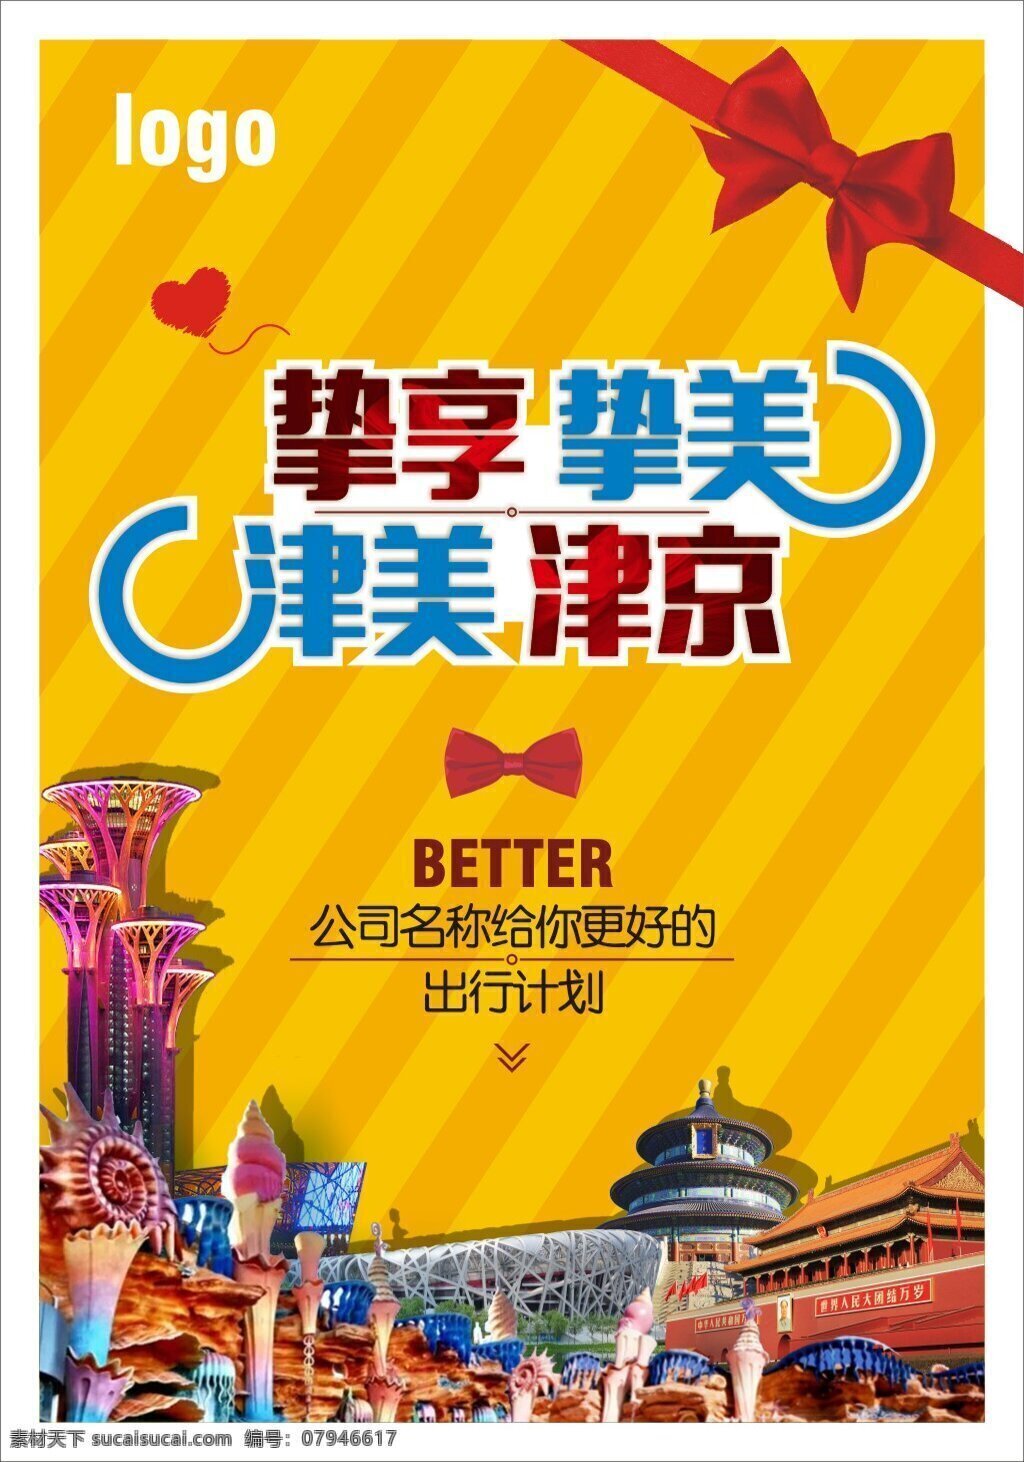 北京 天津 旅游 海报 北京旅游 天津旅游 天安门 时尚 奥运塔